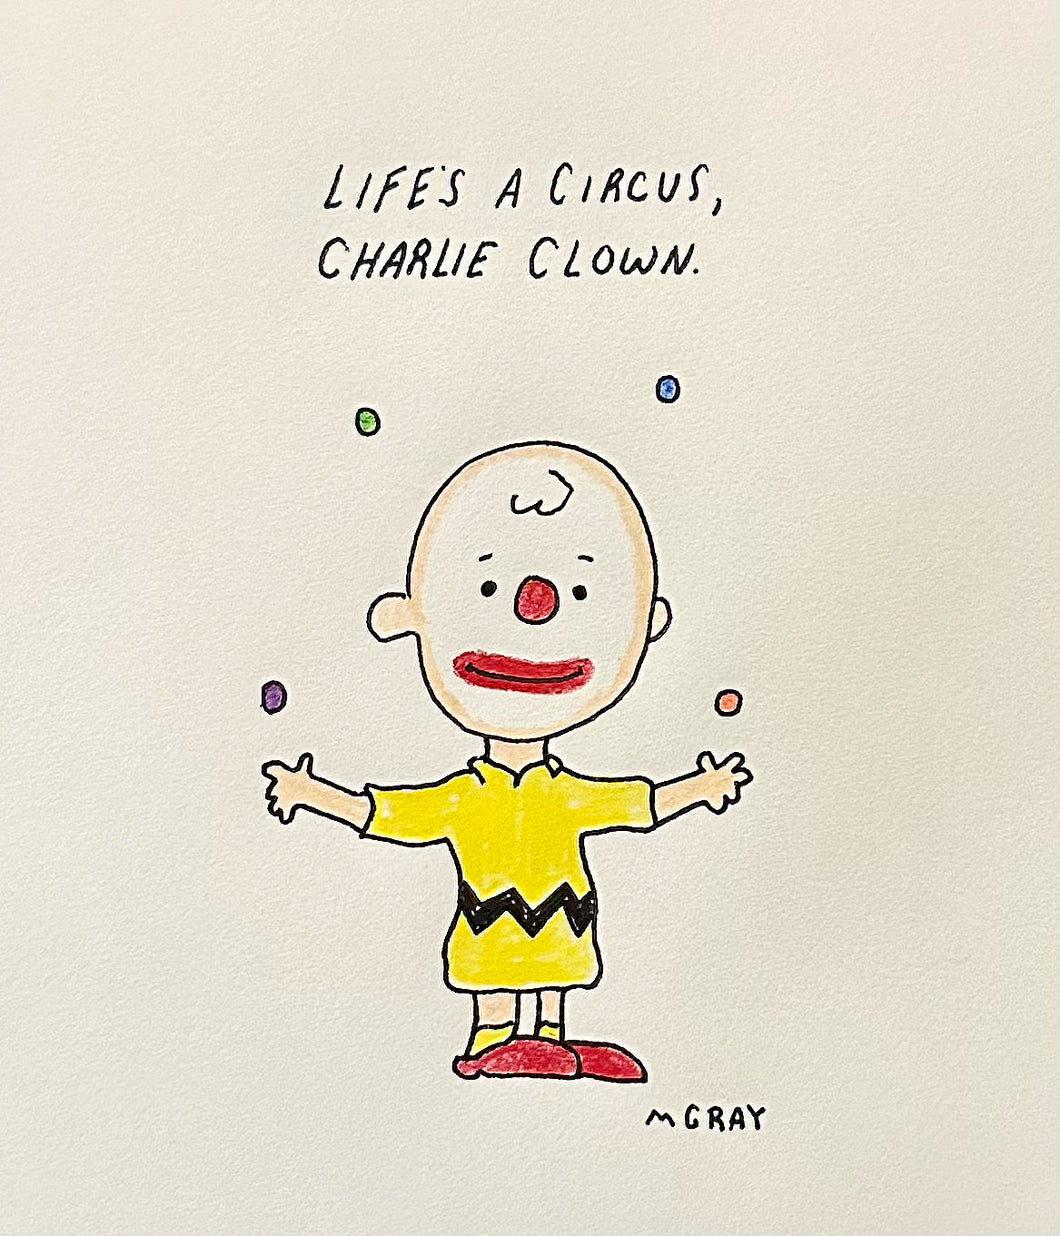 CHARLIE CLOWN